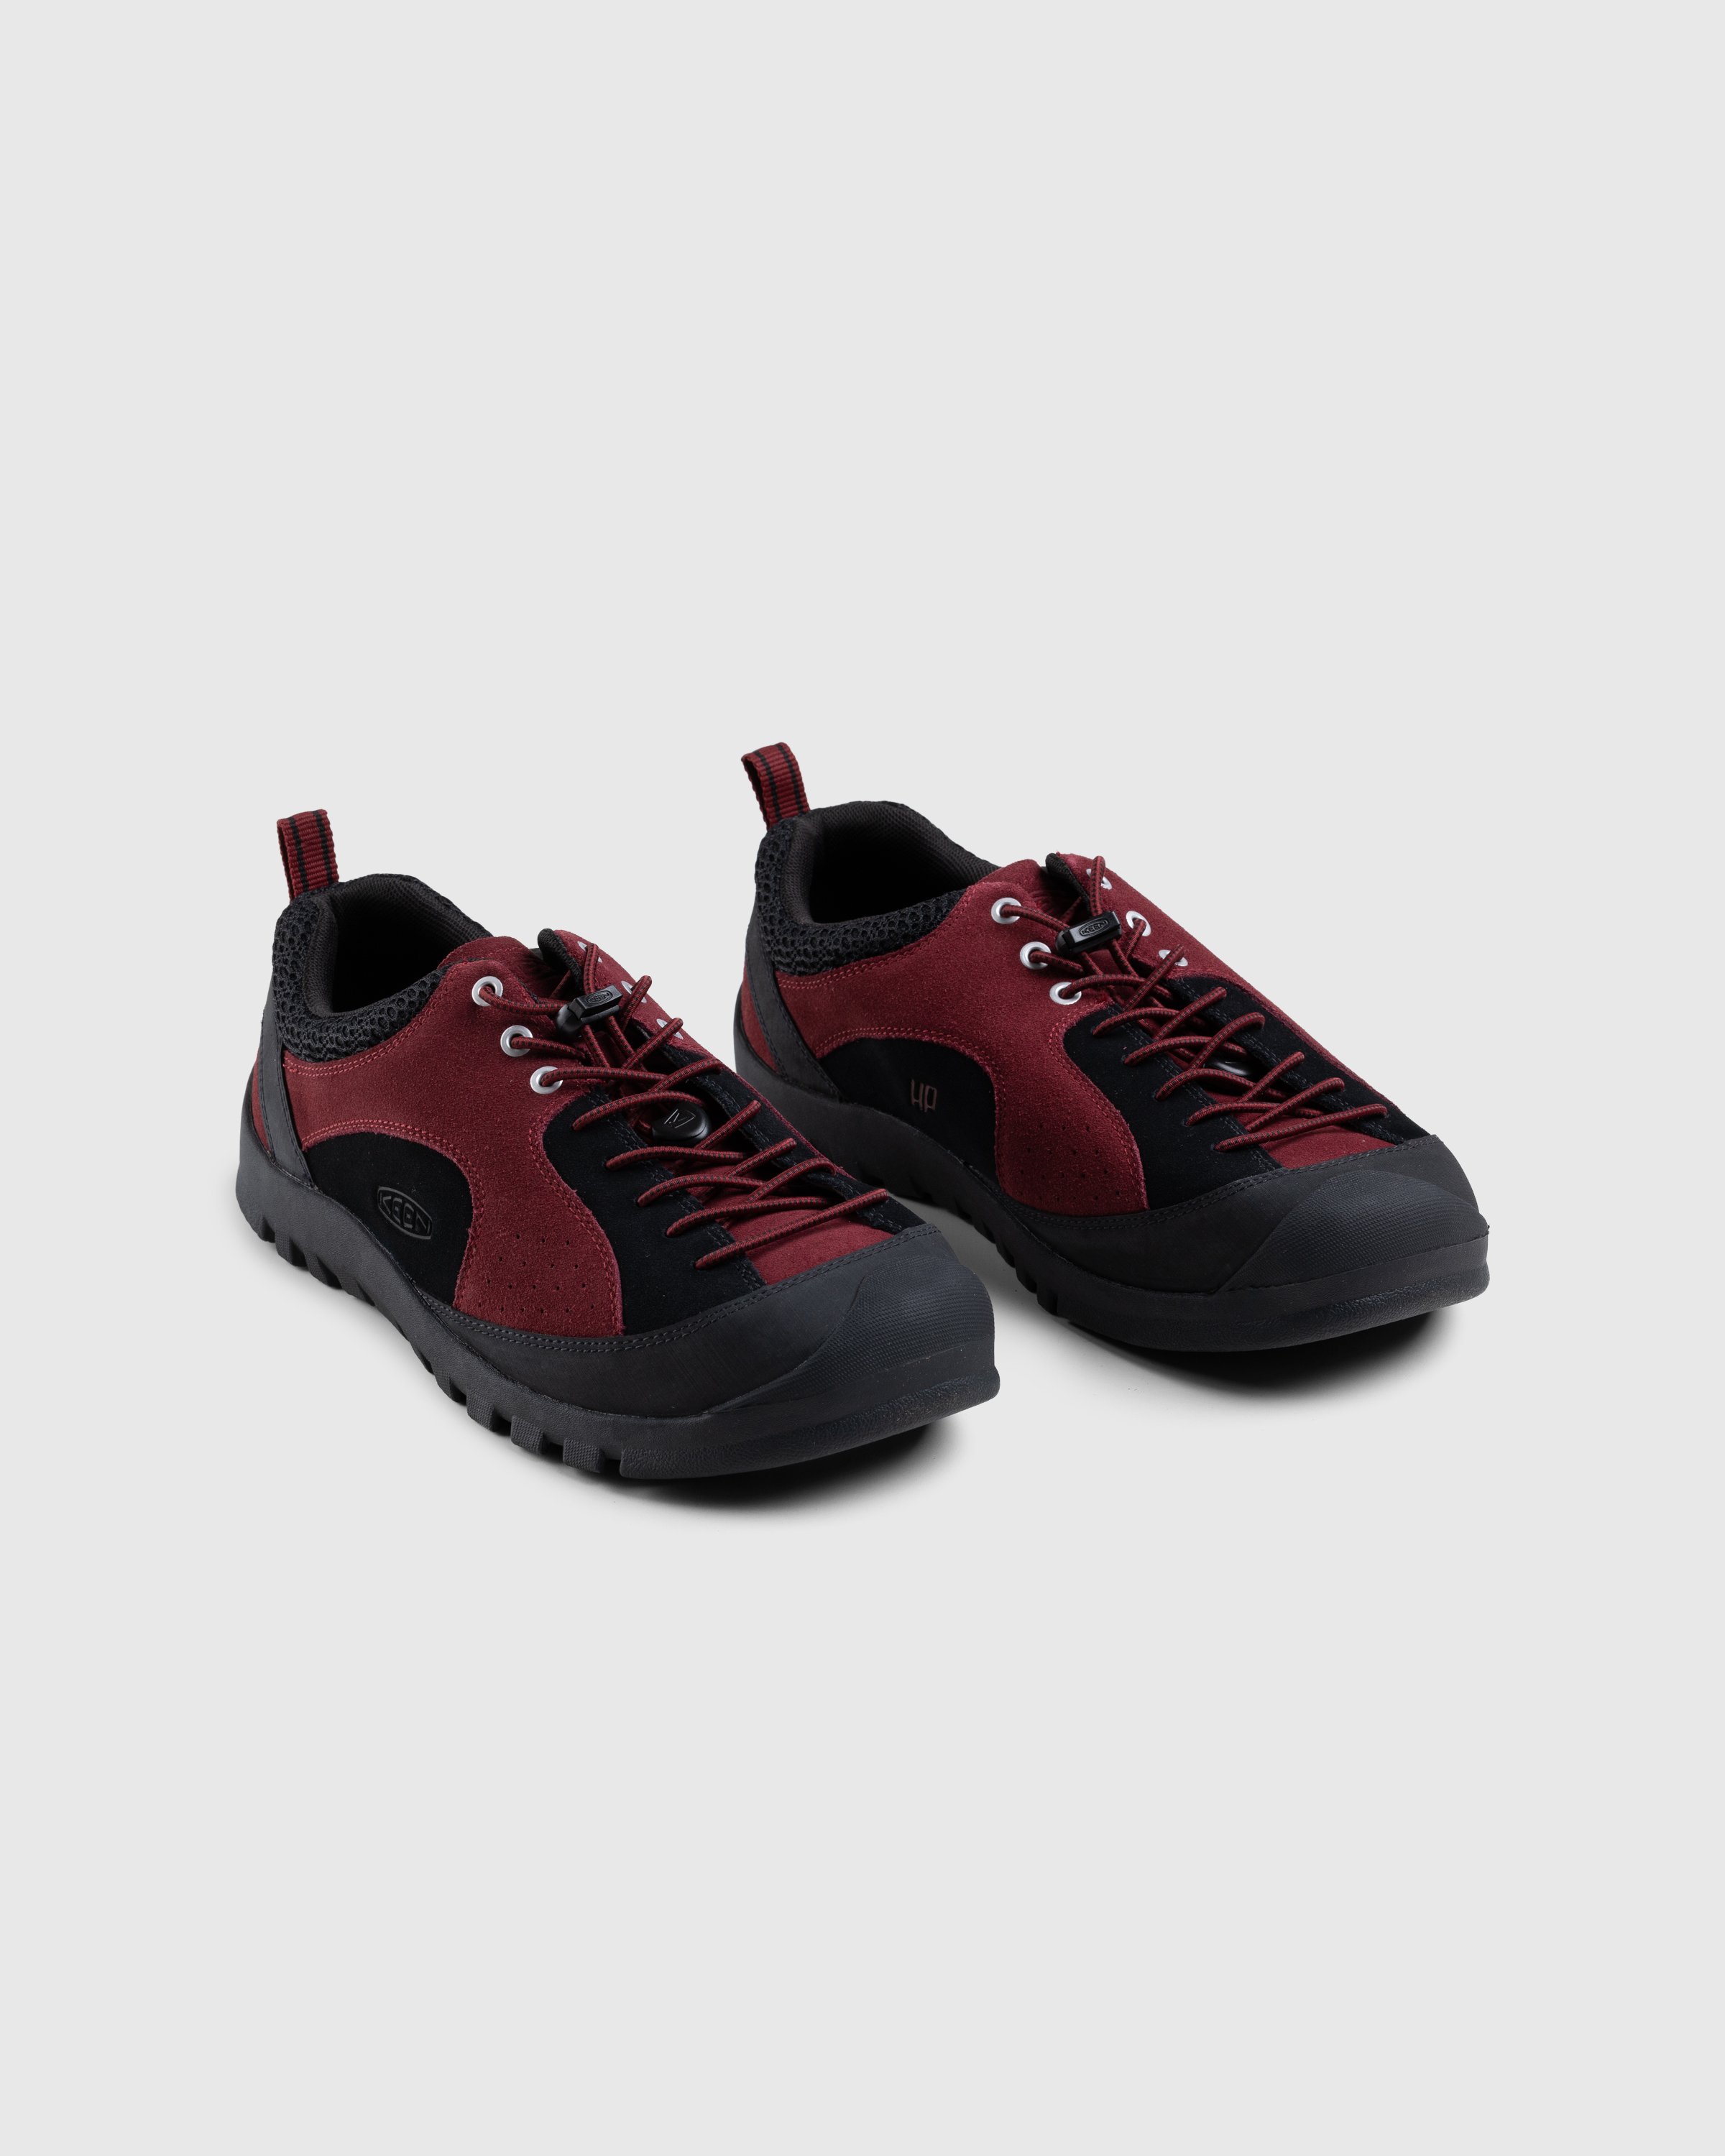 Keen x Hiking Patrol - Jasper Rocks SP Phantasmal Red - Footwear - Red - Image 3